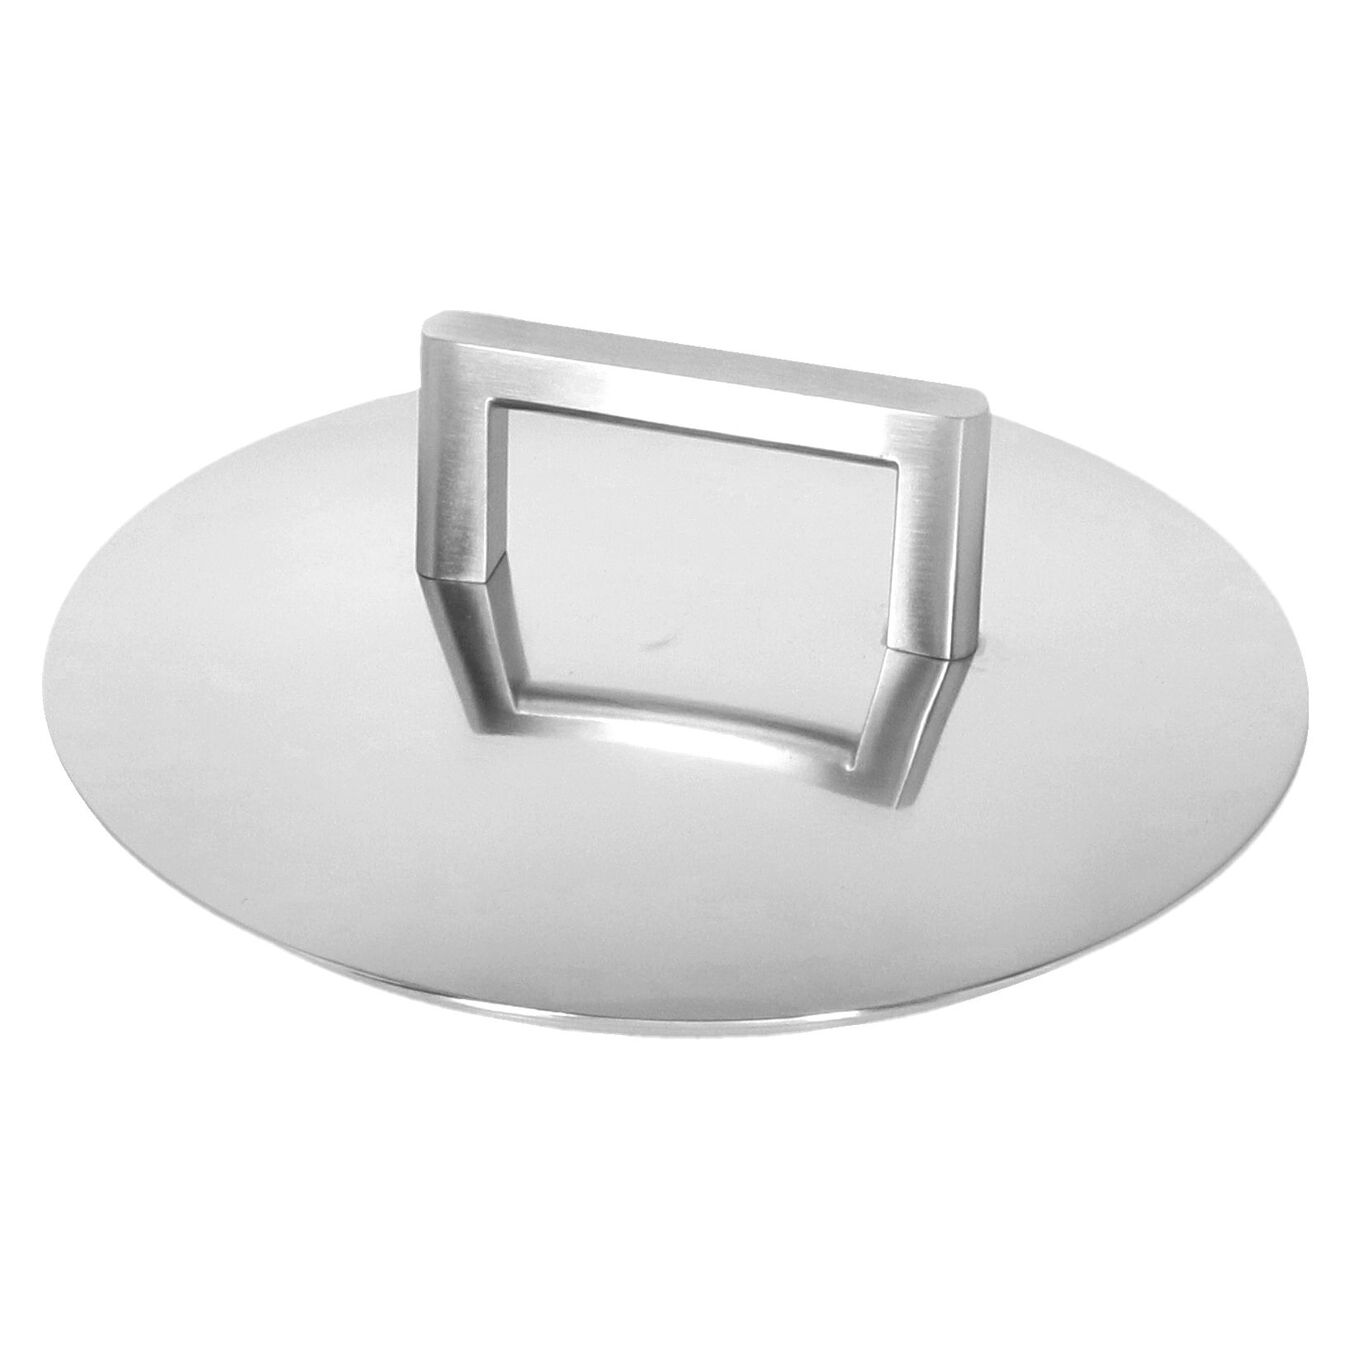 Sığ Tencere çift çıdarlı kapak | 18/10 Paslanmaz Çelik | 16 cm | Metalik Gri,,large 3